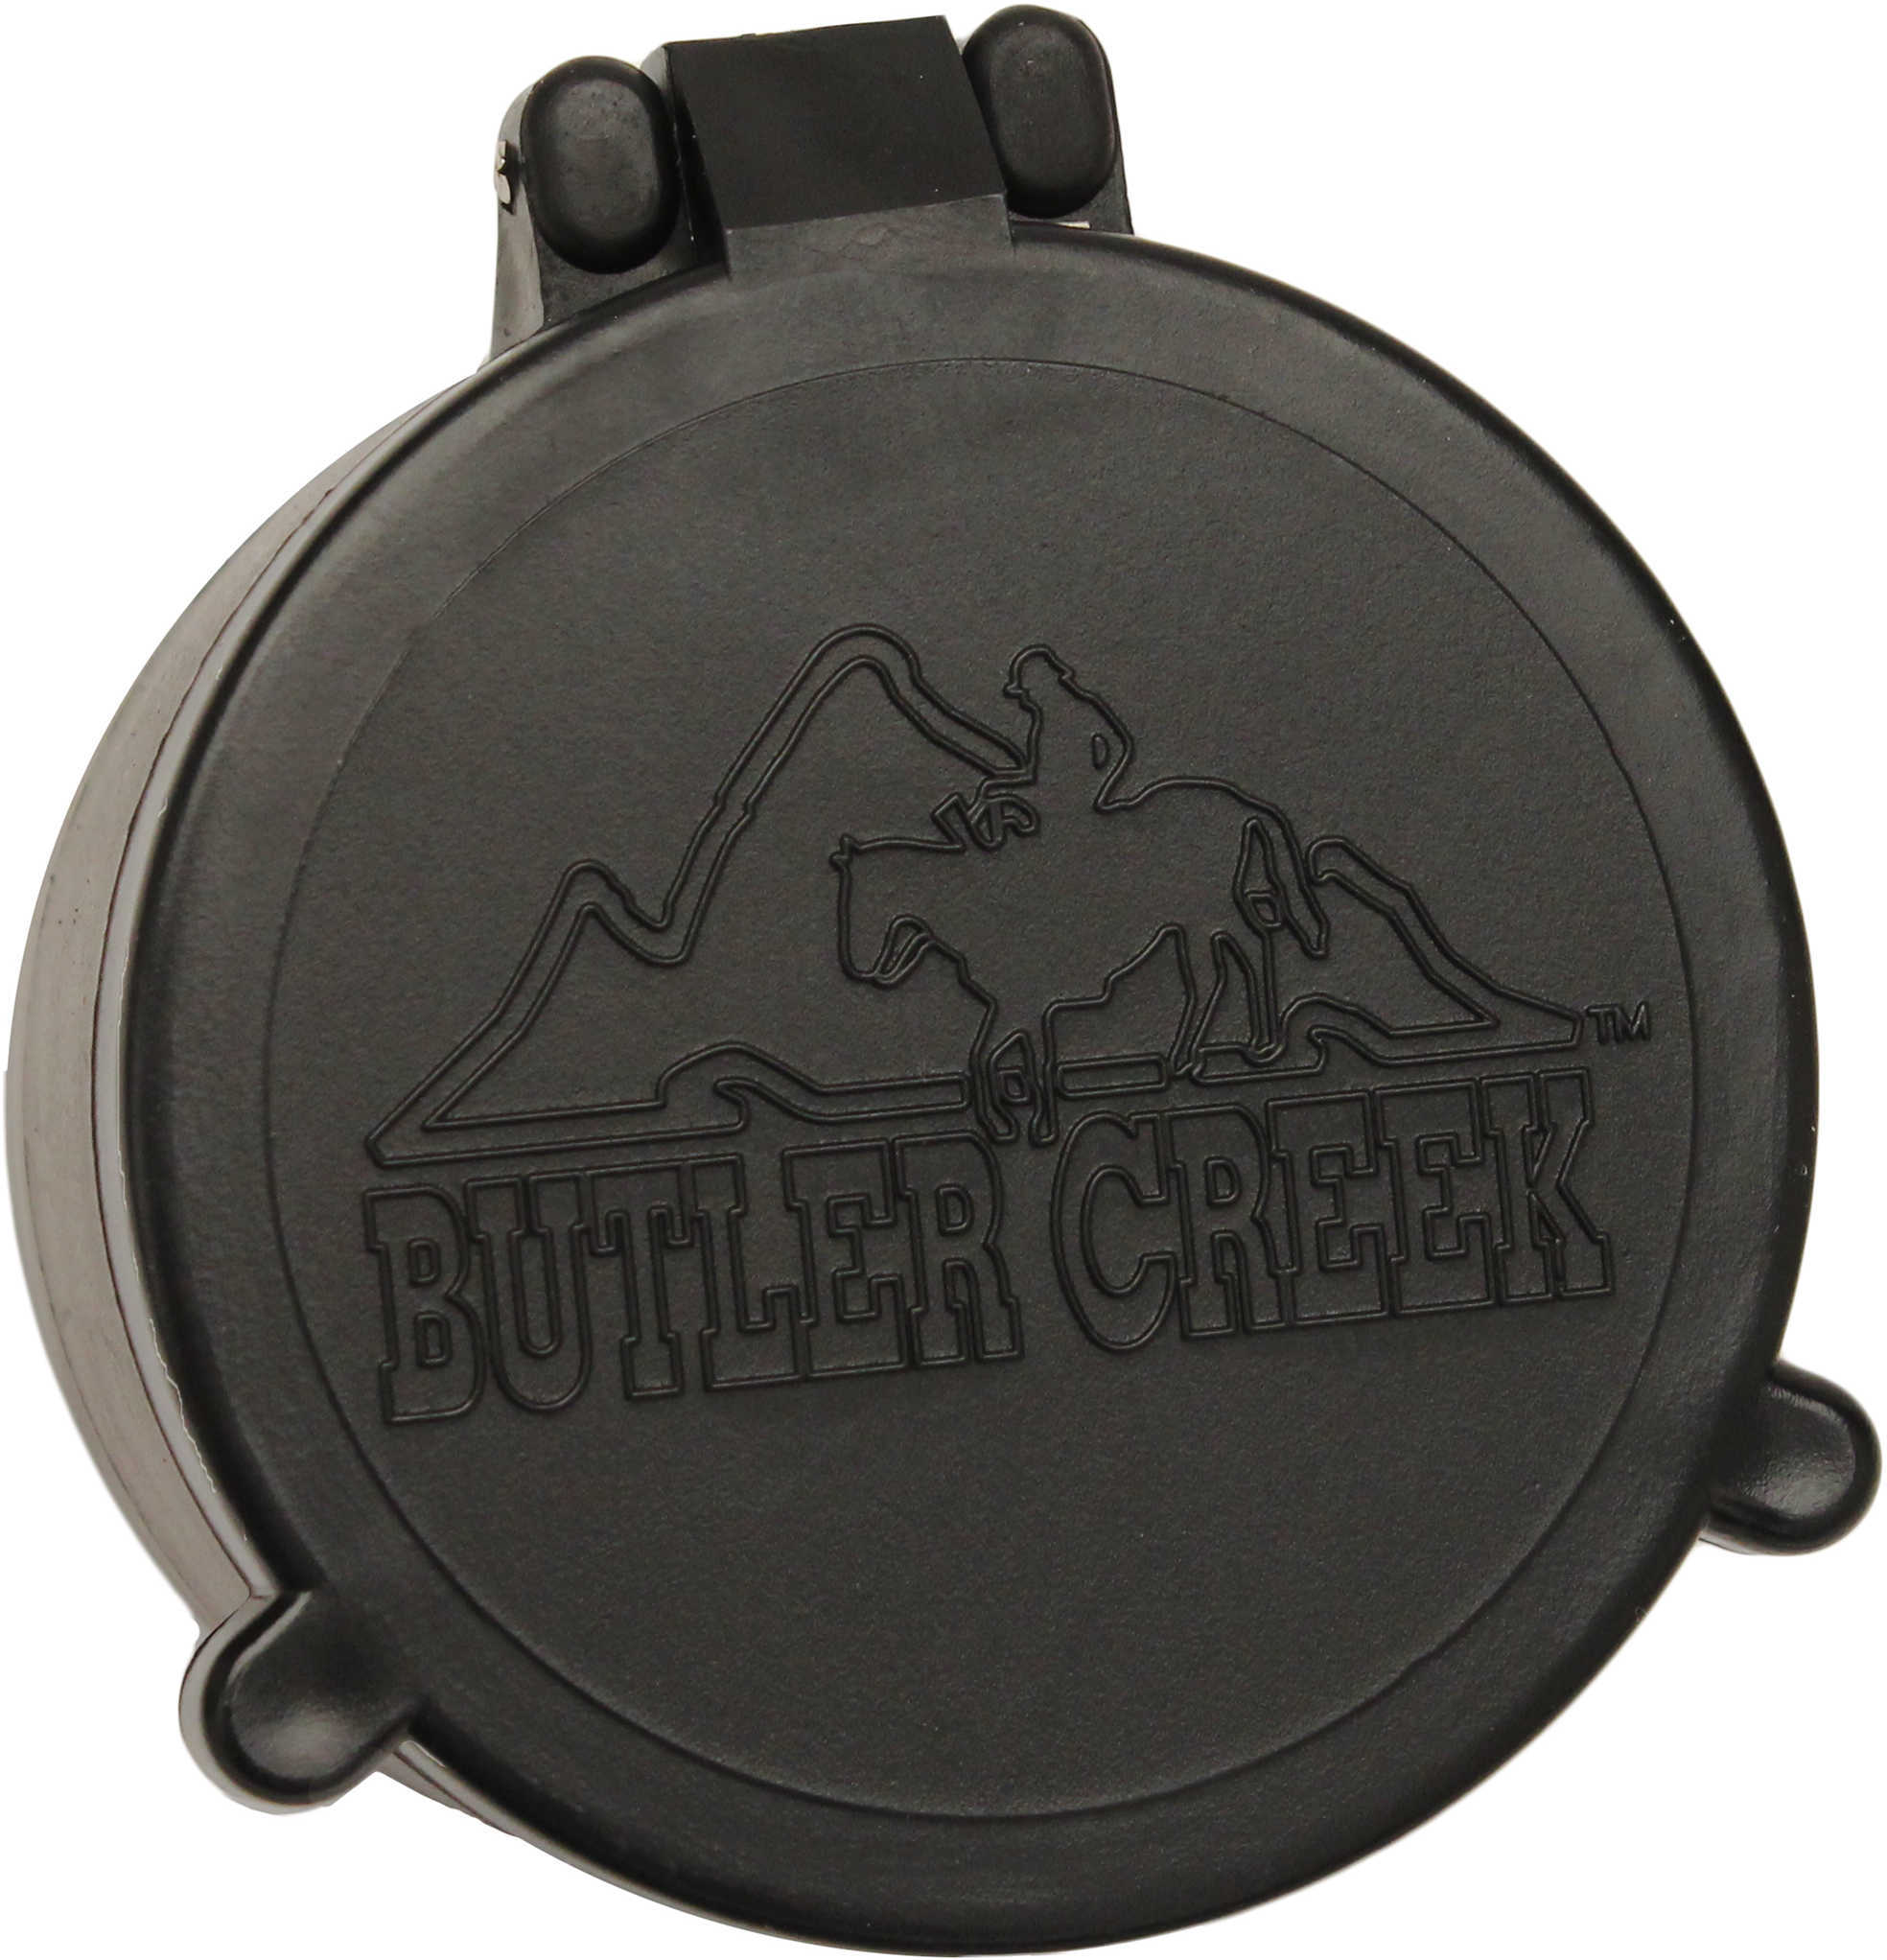 Butler Creek 30020 Flip-Open Scope Cover Objective Lens 31.00mm Slip On Polymer Black